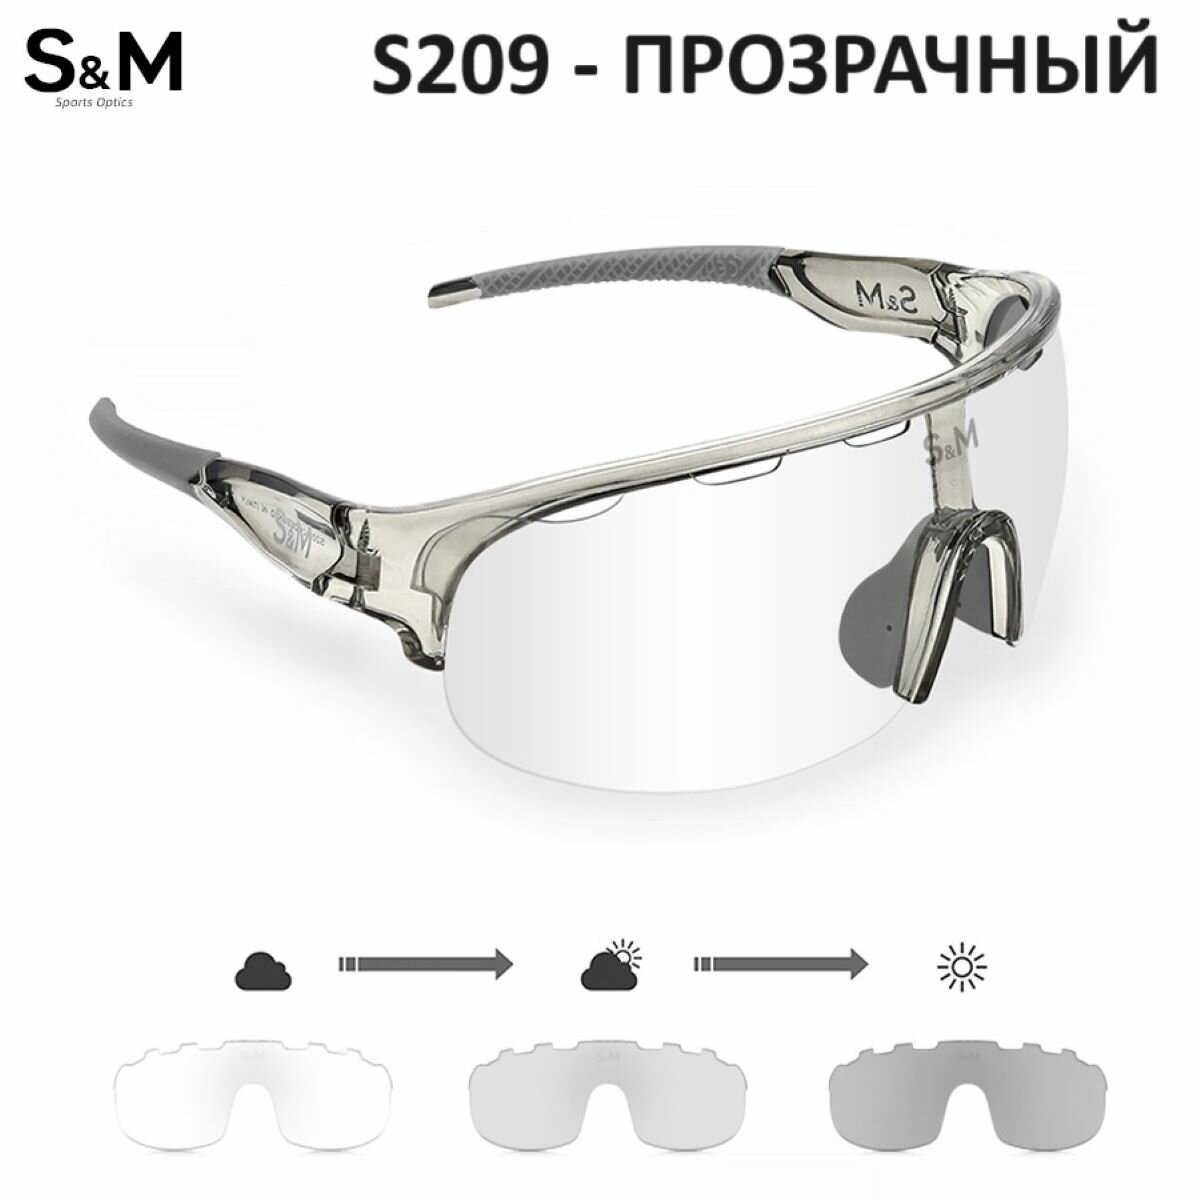 Спортивные очки с диоптрийной вставкой фотохромные белые